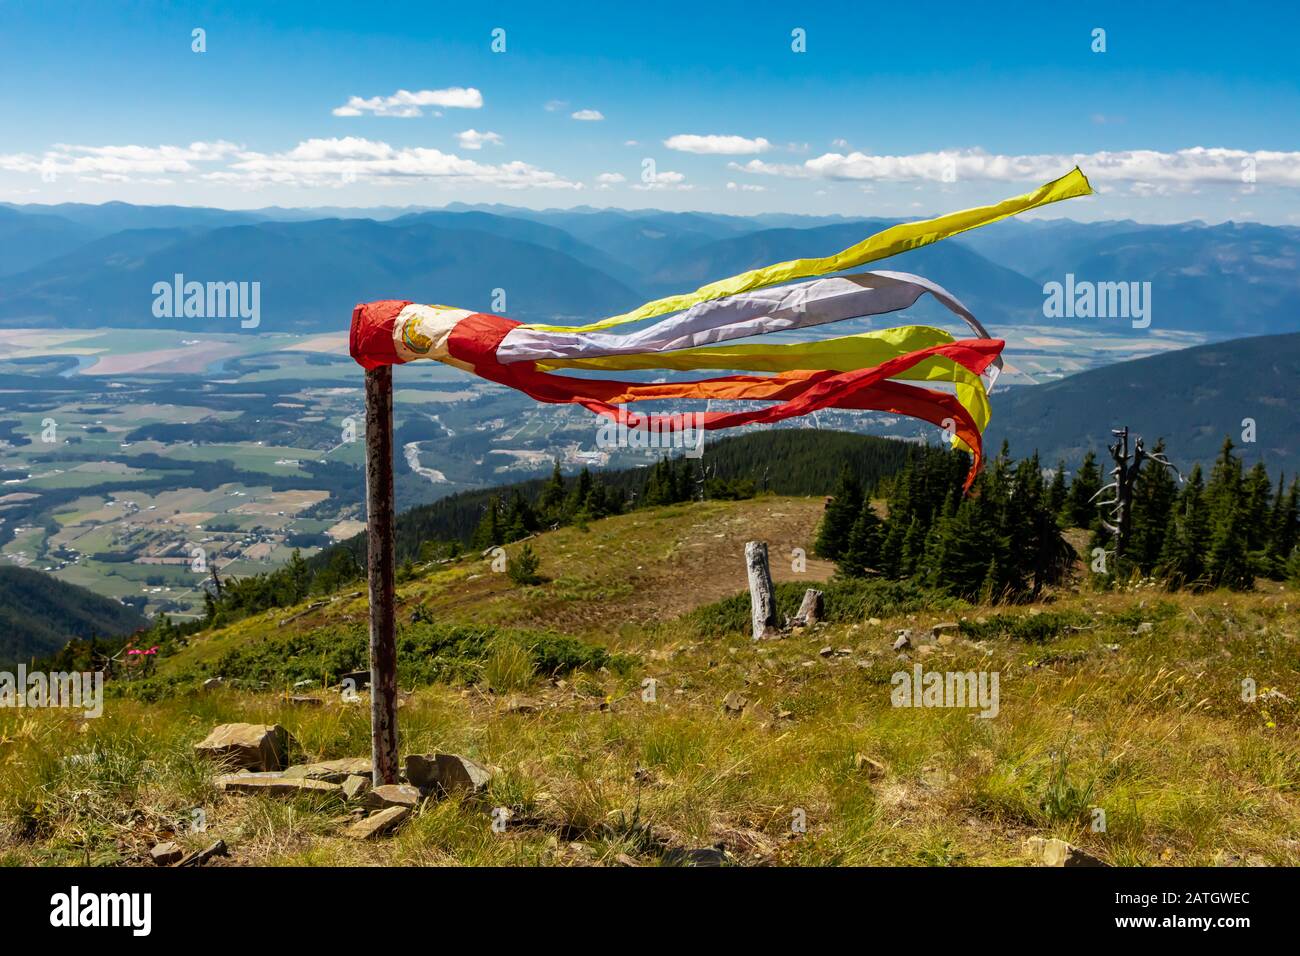 Un outil de base sur le sommet de la montagne utilisé pour aider à estimer la vitesse du vent. Un outil utile pour les planeurs de rang ou les paragliders Banque D'Images